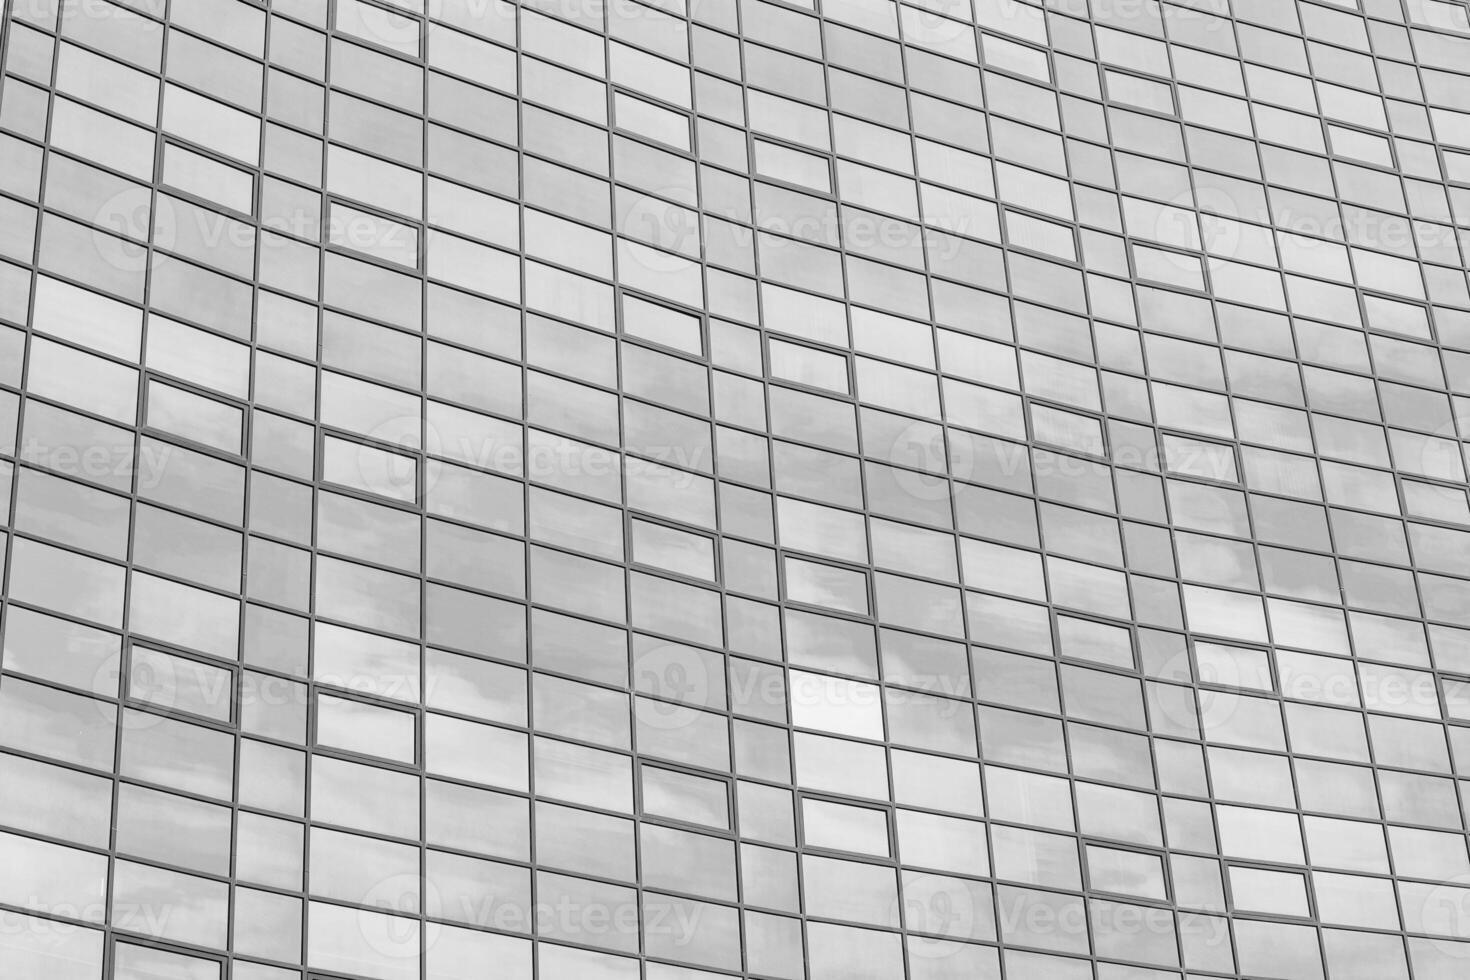 negro y blanco fragmento de un moderno oficina edificio. resumen geométrico antecedentes. parte de el fachada de un rascacielos con vaso ventanas foto